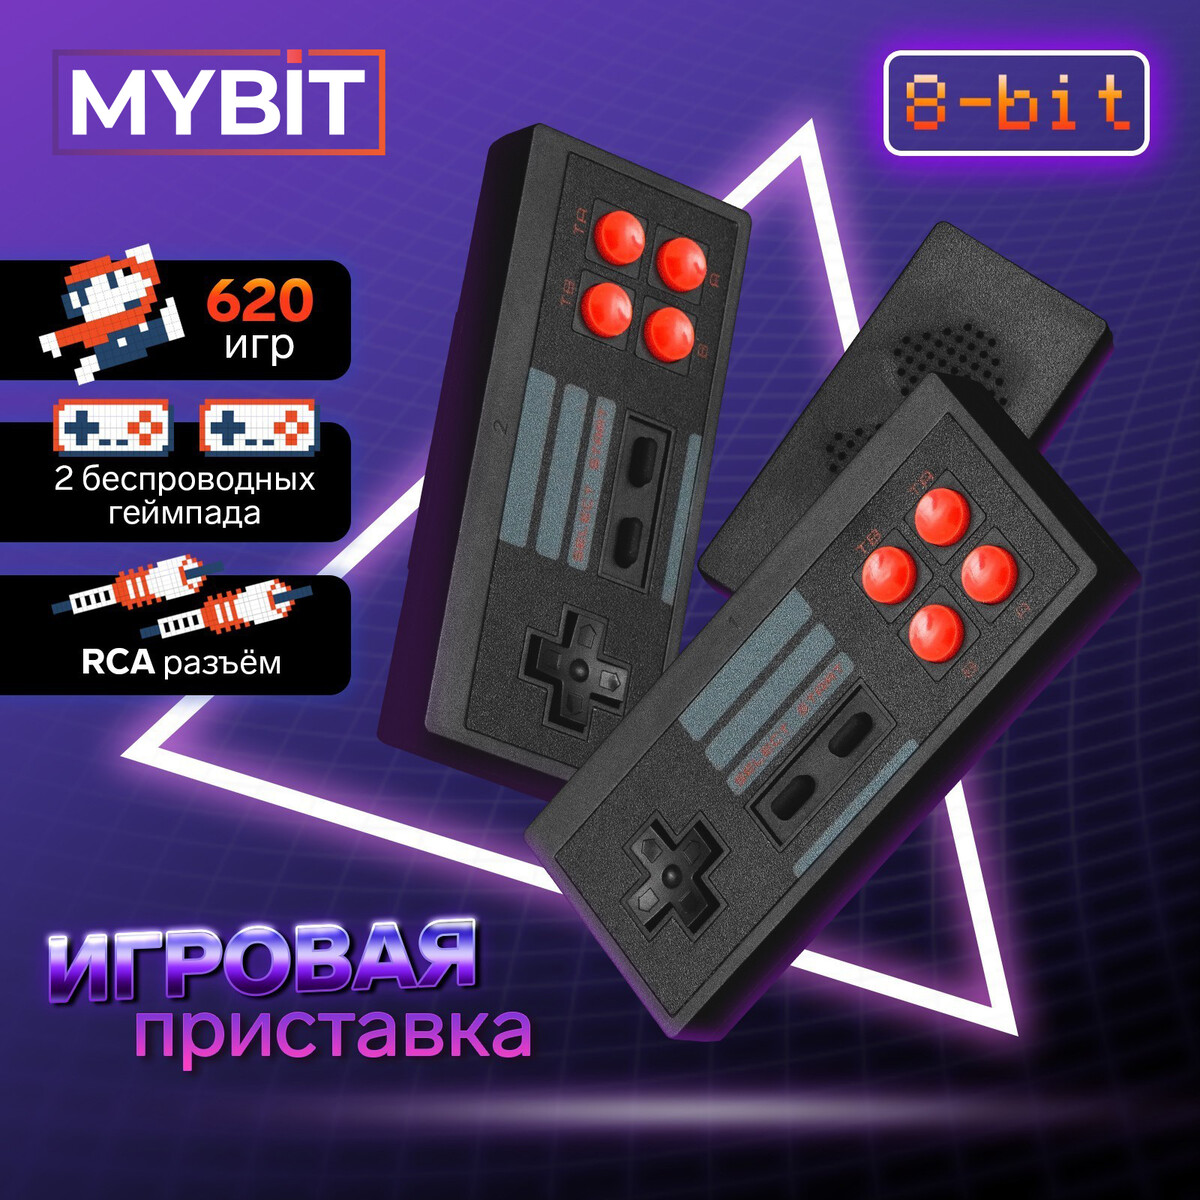 Игровая приставка mybit game-6, 8 бит, 620 игр, rca, 2 беспроводных джойстика, черная the god game